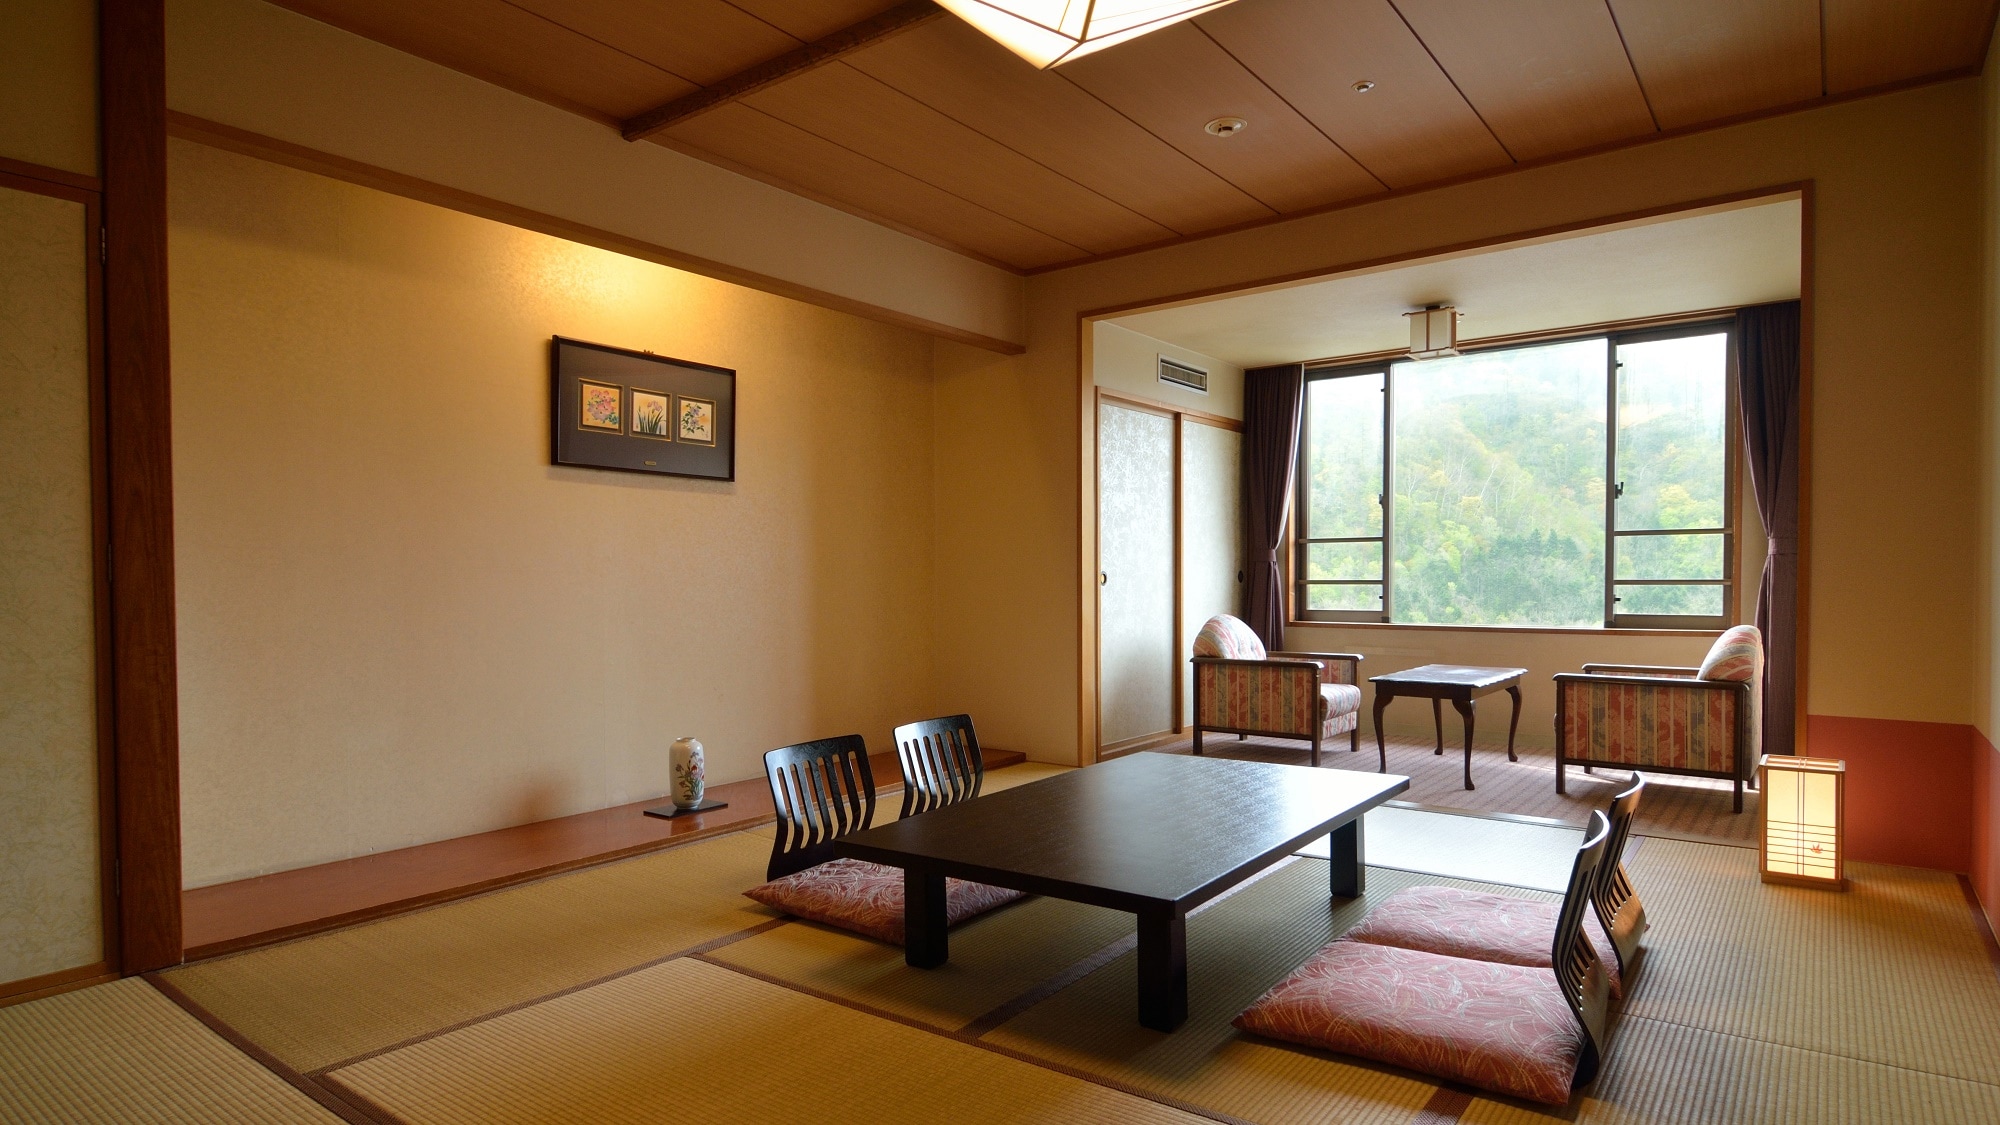 【일본식 방 10 다다미】 창가에는 2 다다미 정도의 가장자리 쪽. 개방감이 있는 방에서 느긋하게 흐르는 리조트 시간을 만끽.